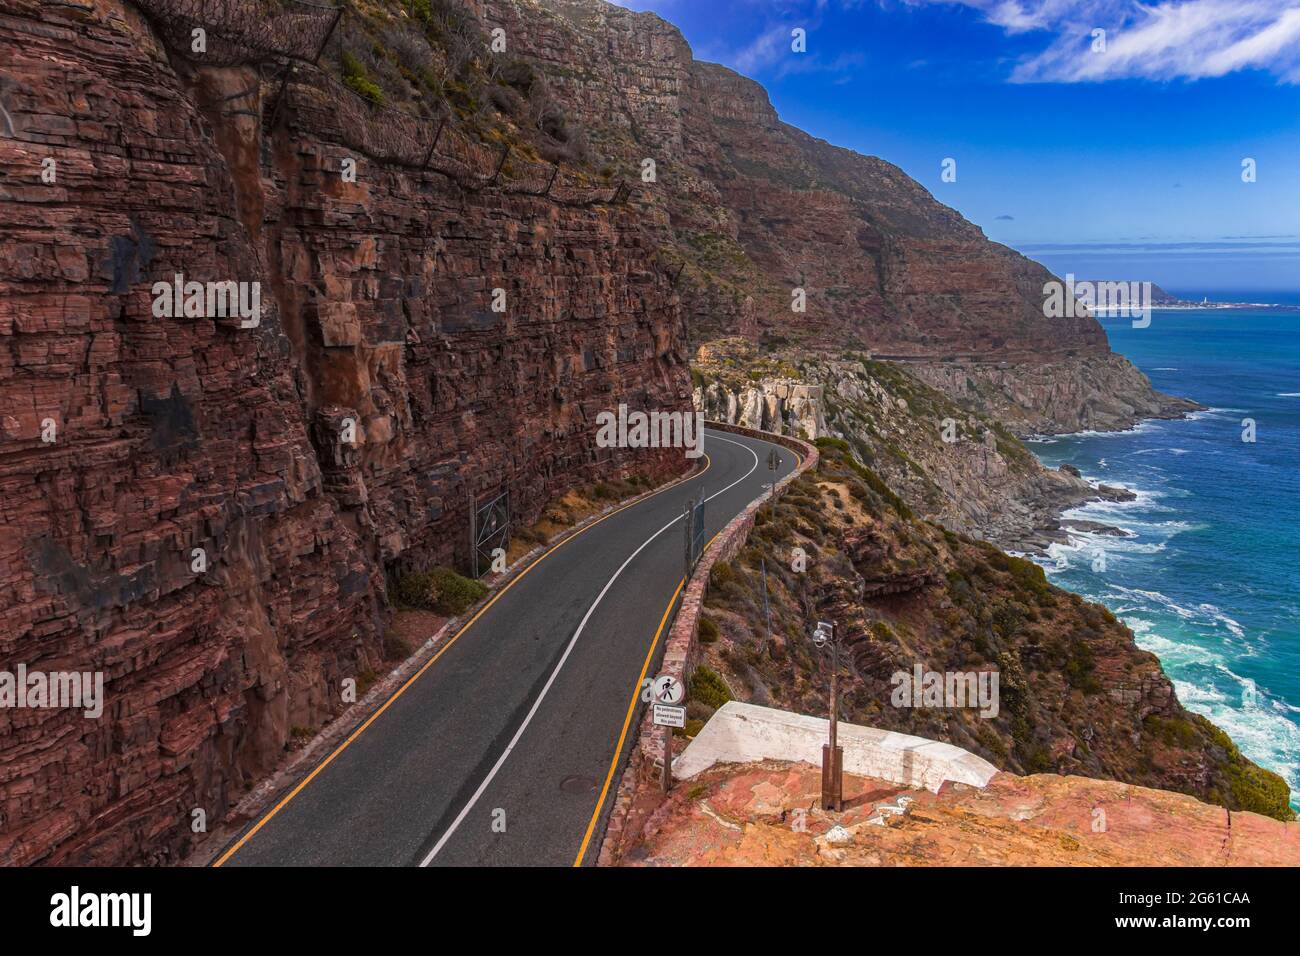 La strada sulla scogliera di Chapman's Peak Drive che si snoda sul mare di Hout Bay nella Penisola del Capo, Sud Africa. Foto Stock